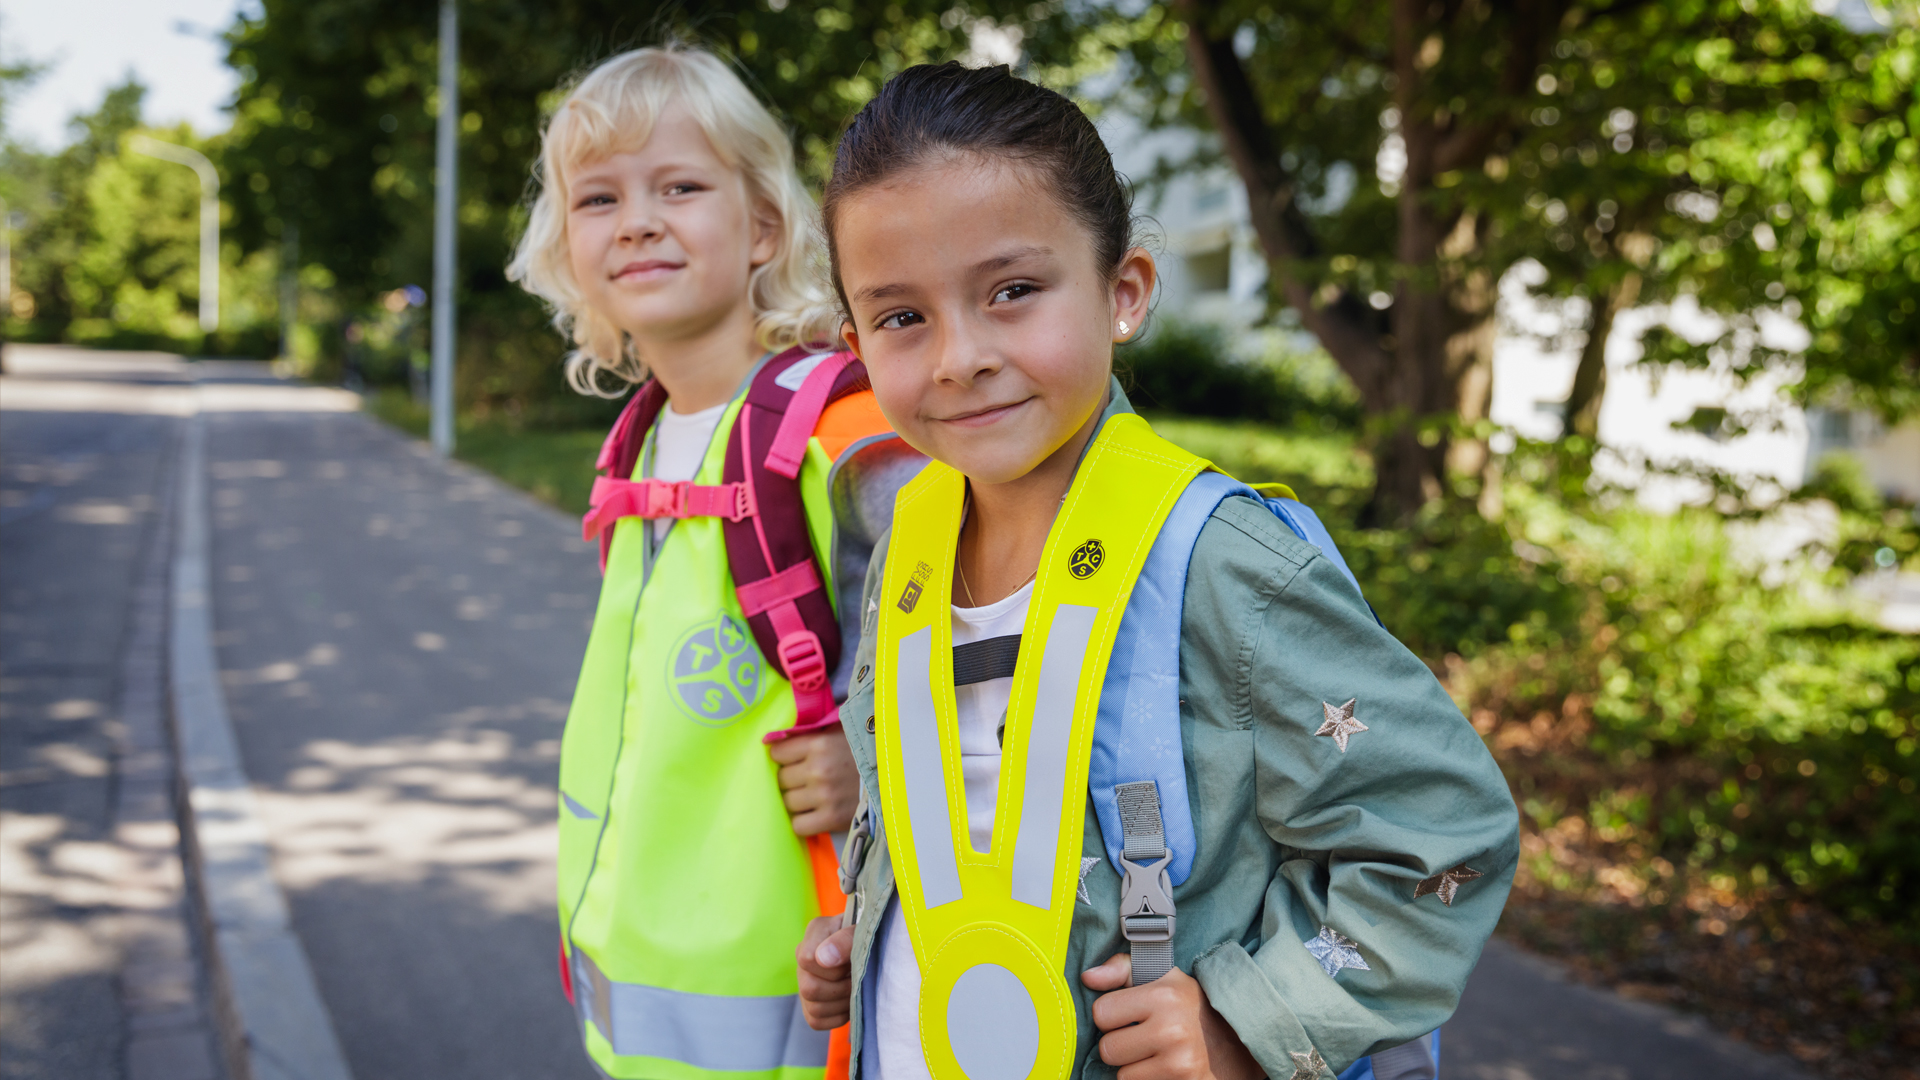 Sicurezza nel tragitto casa-scuola: due bambine con gilet riflettente e pettorina catarifrangente (triki)